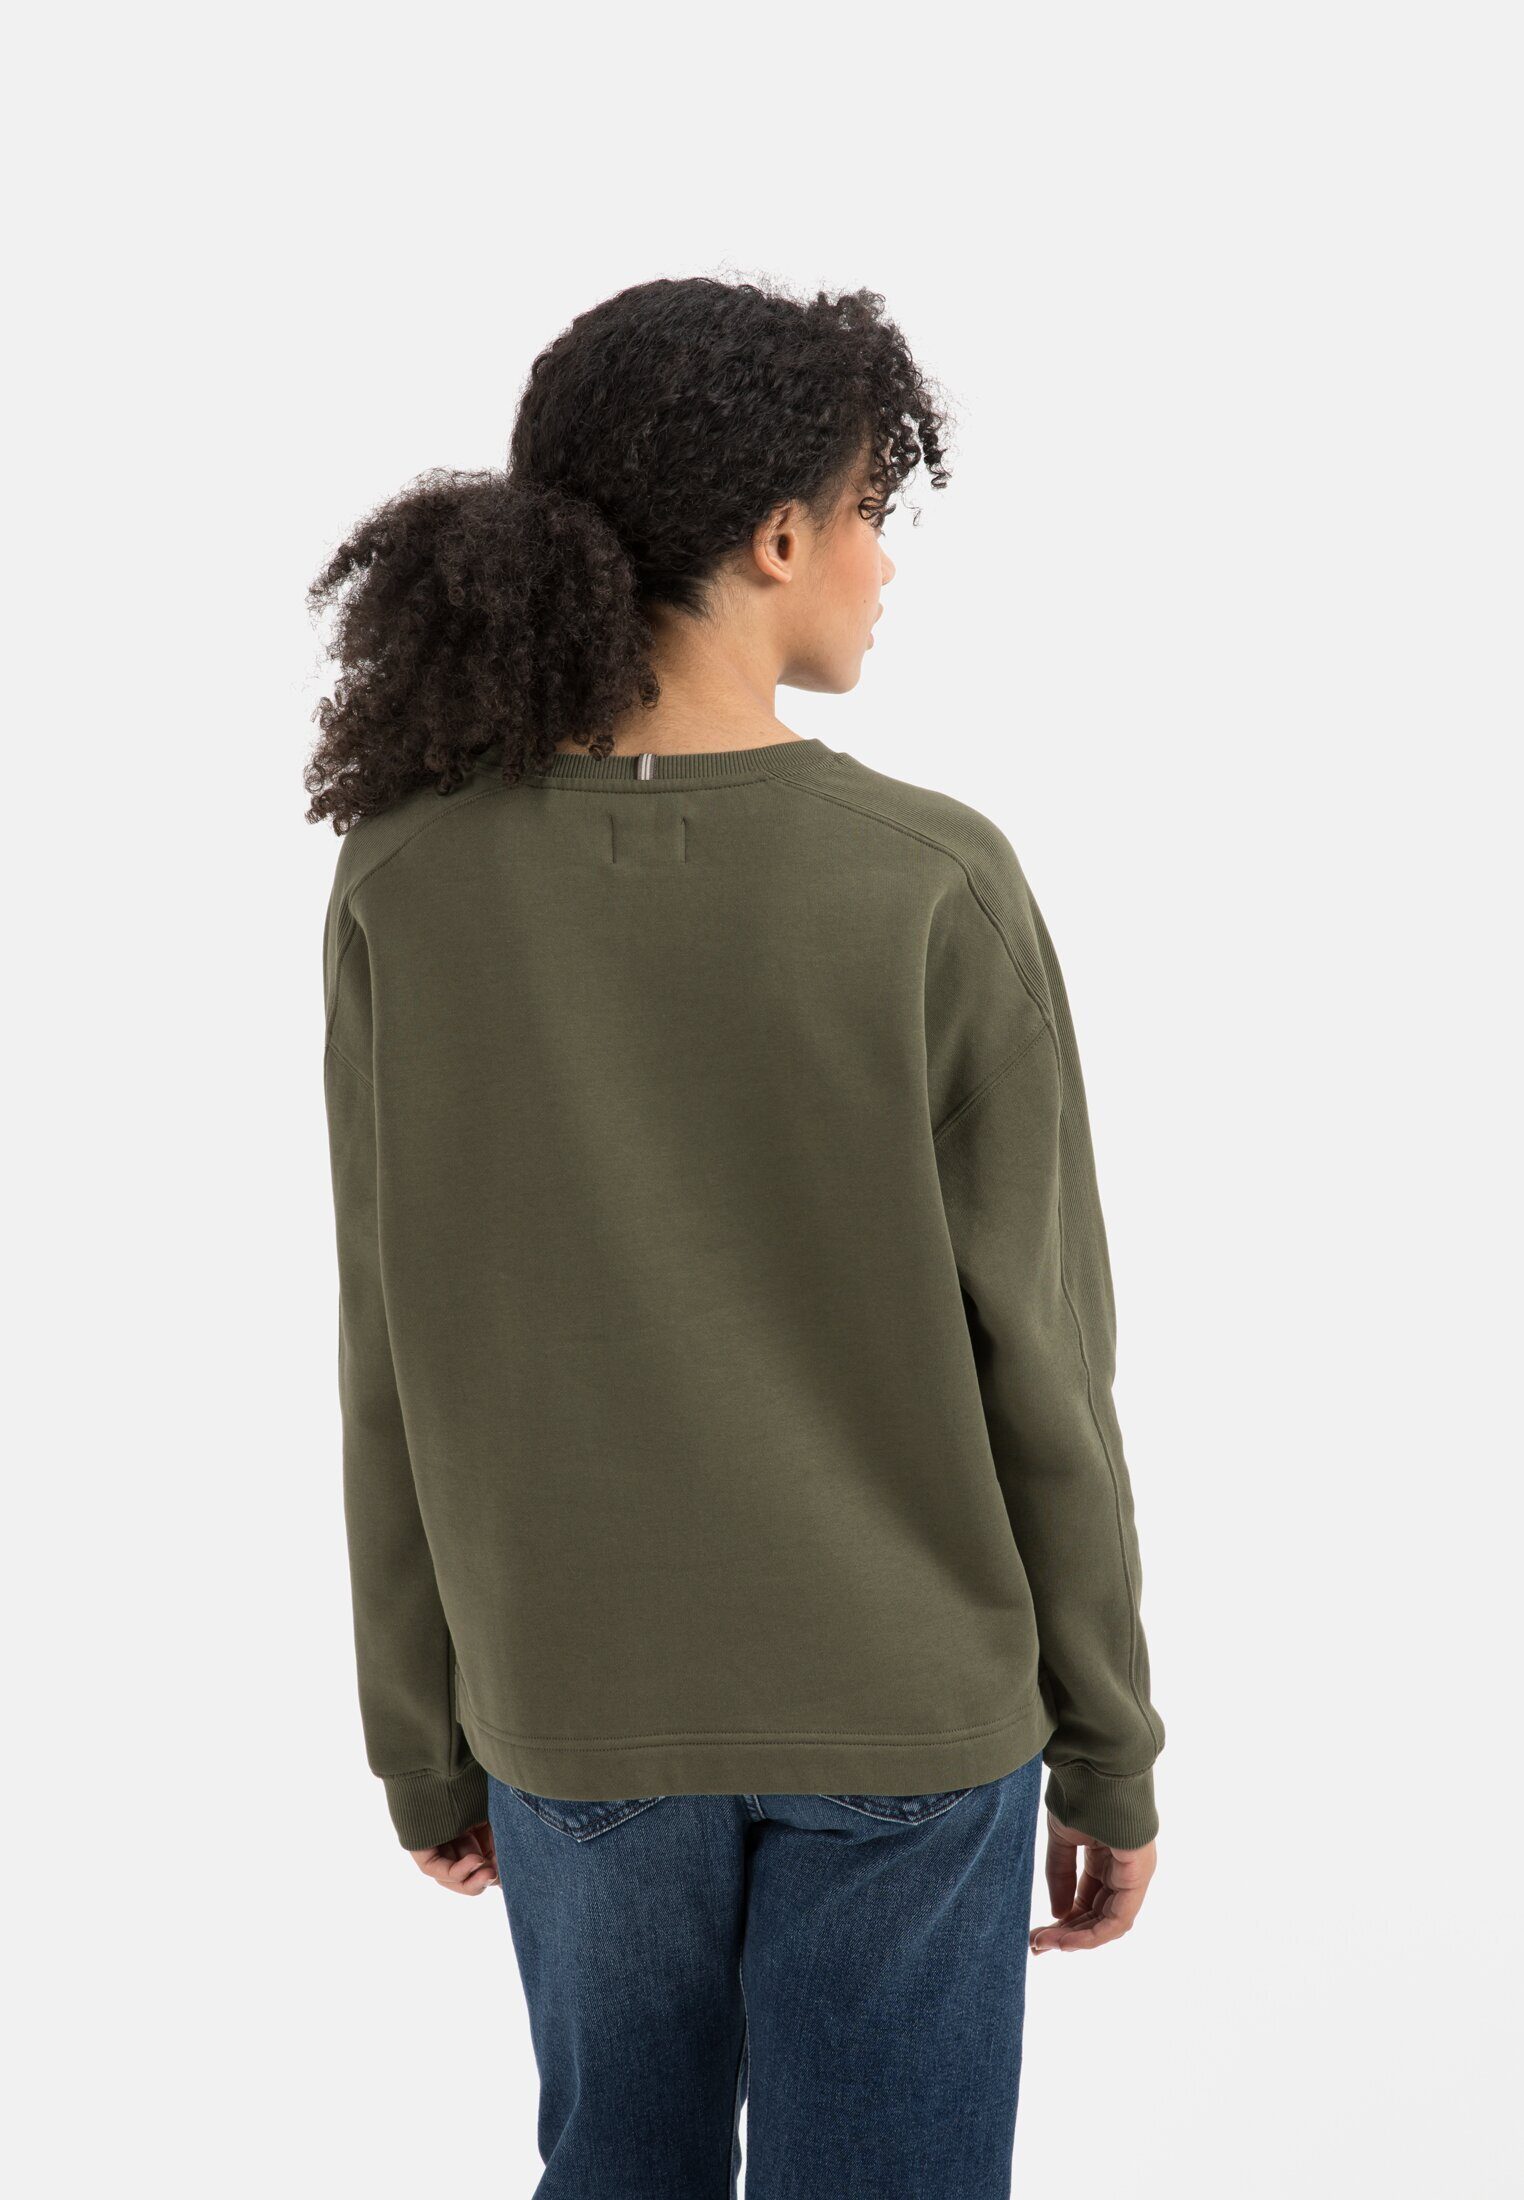 reiner aus camel active Oliv-Grau Baumwolle Sweatshirt